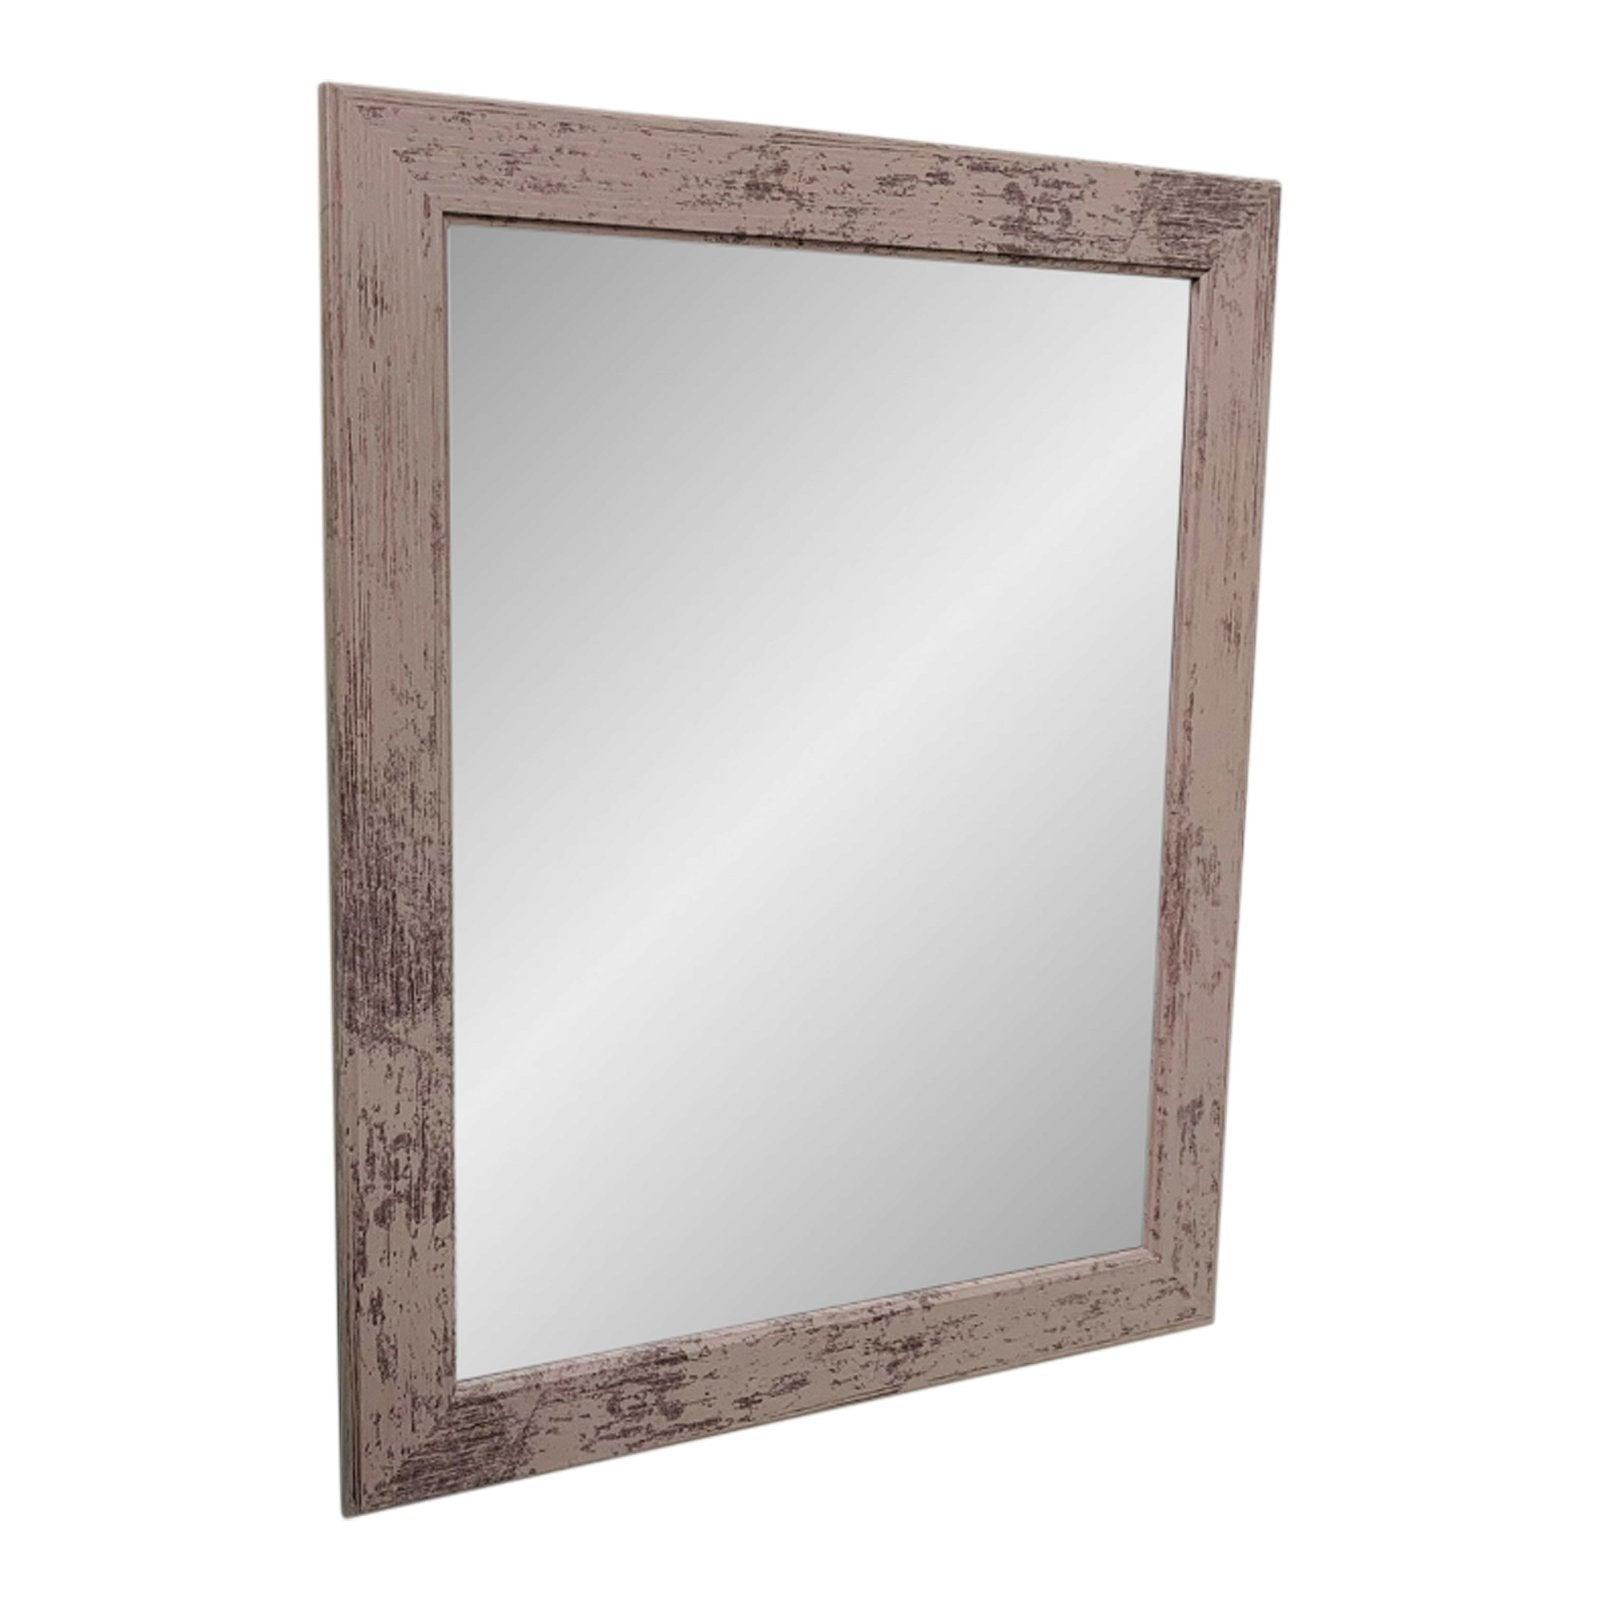 View Grey Wooden Mirror 60x50cm information